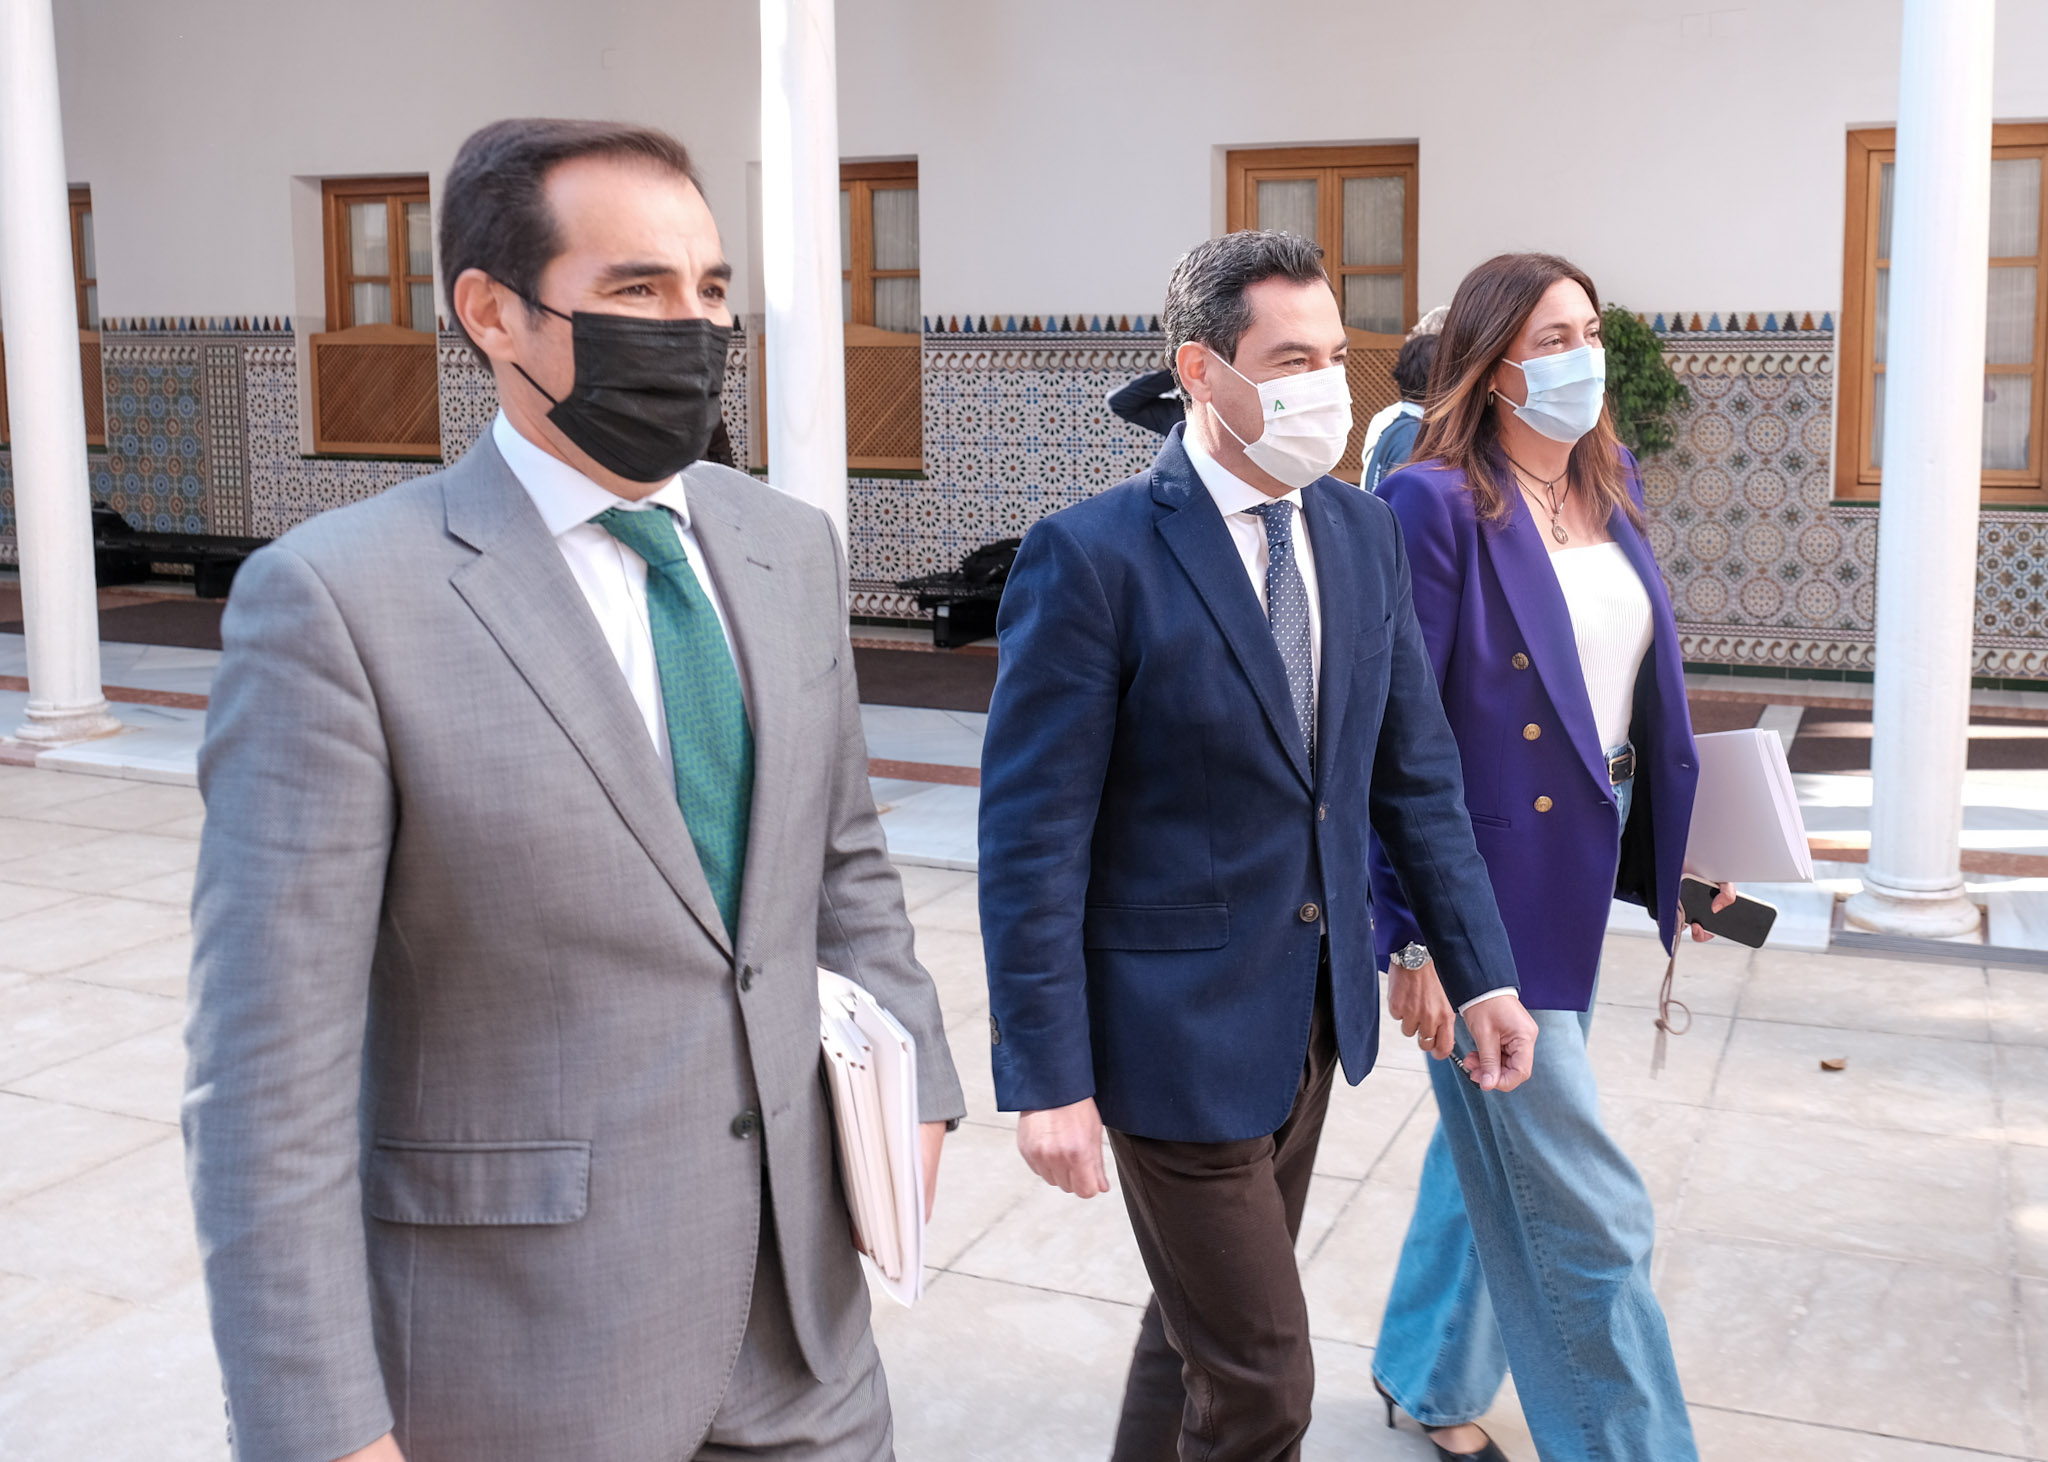  El presidente de la Junta de Andaluca, Juan Manuel Moreno, se dirige a la sesin de control acompaado por Jos Antonio Nieto y Dolores Lpez, del Grupo Popular Andaluz 